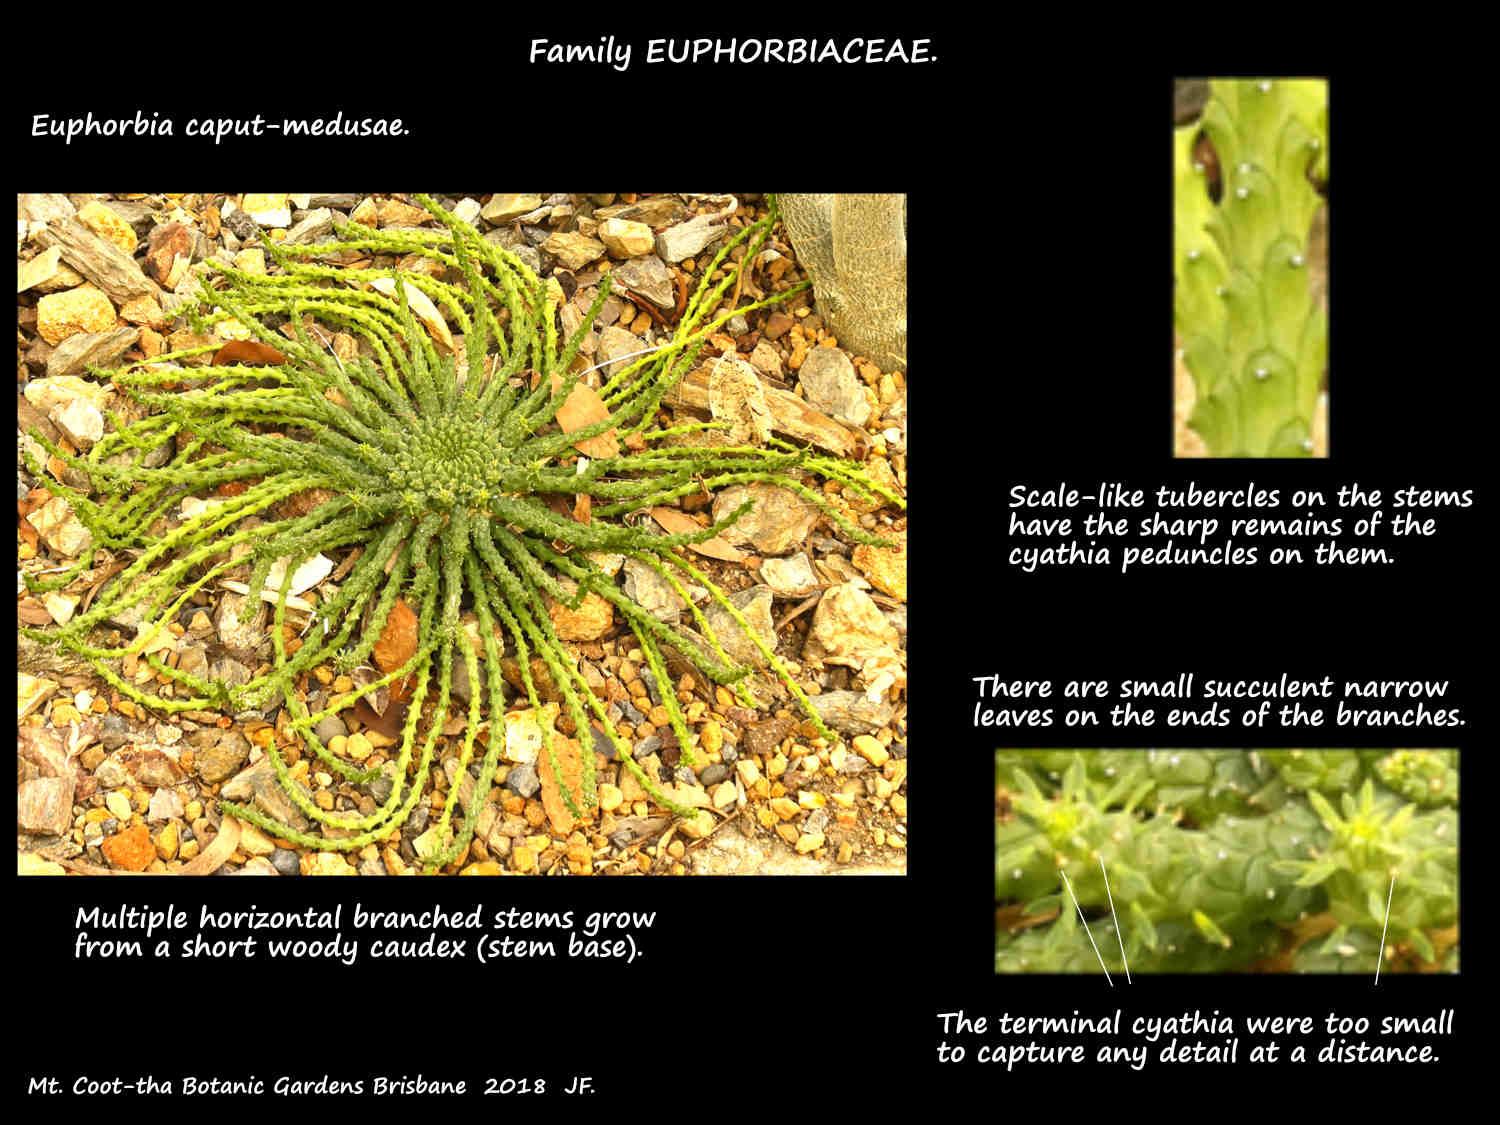 A Euphorbia caput-medusae plant